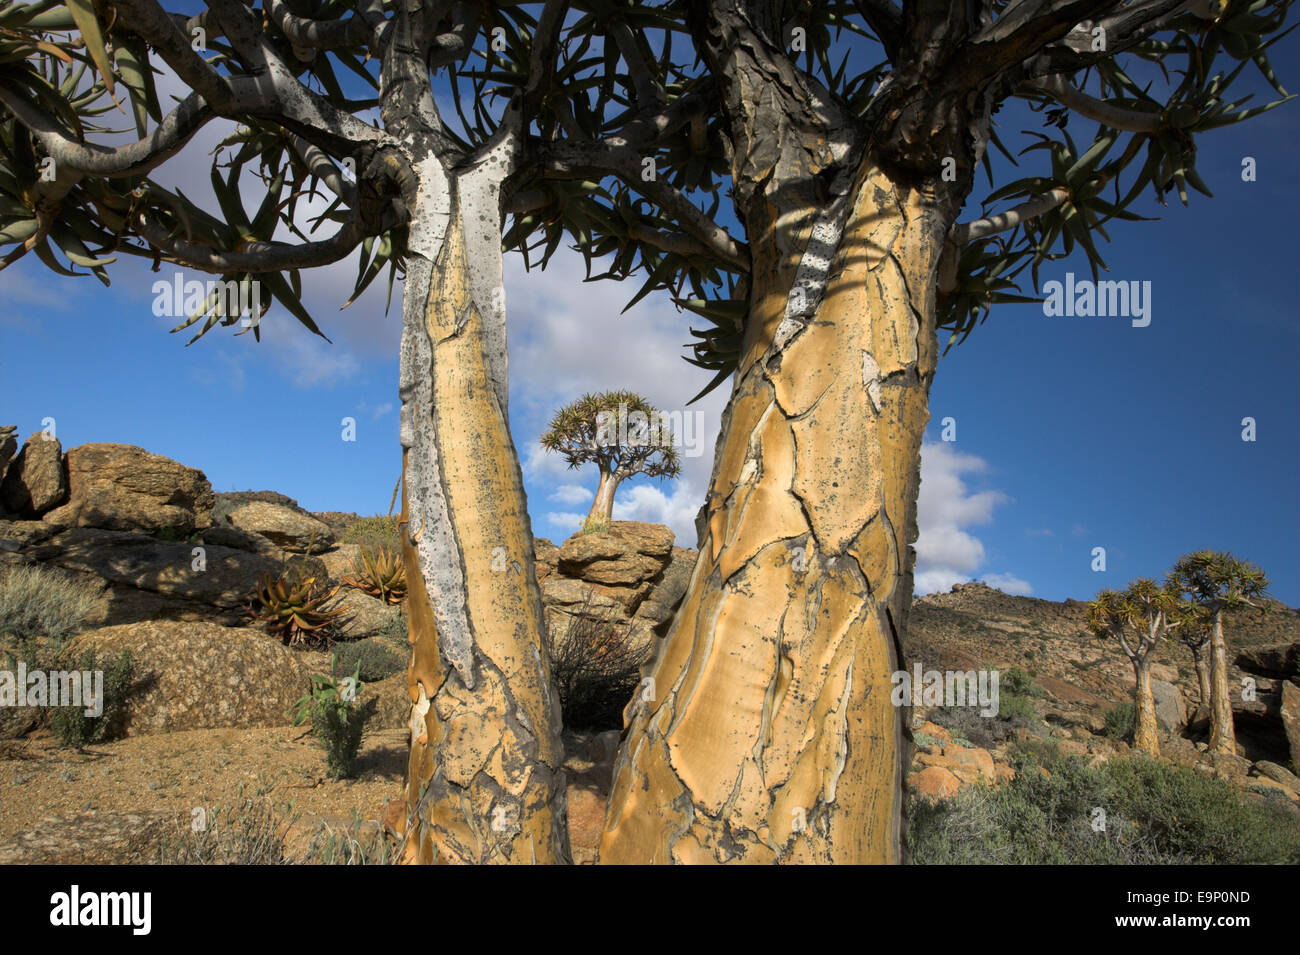 Arbre carquois kokerboom (Aloe dichotoma), réserve naturelle, Goegap, springbok, Namaqualand, Northern Cape, Afrique du Sud Banque D'Images